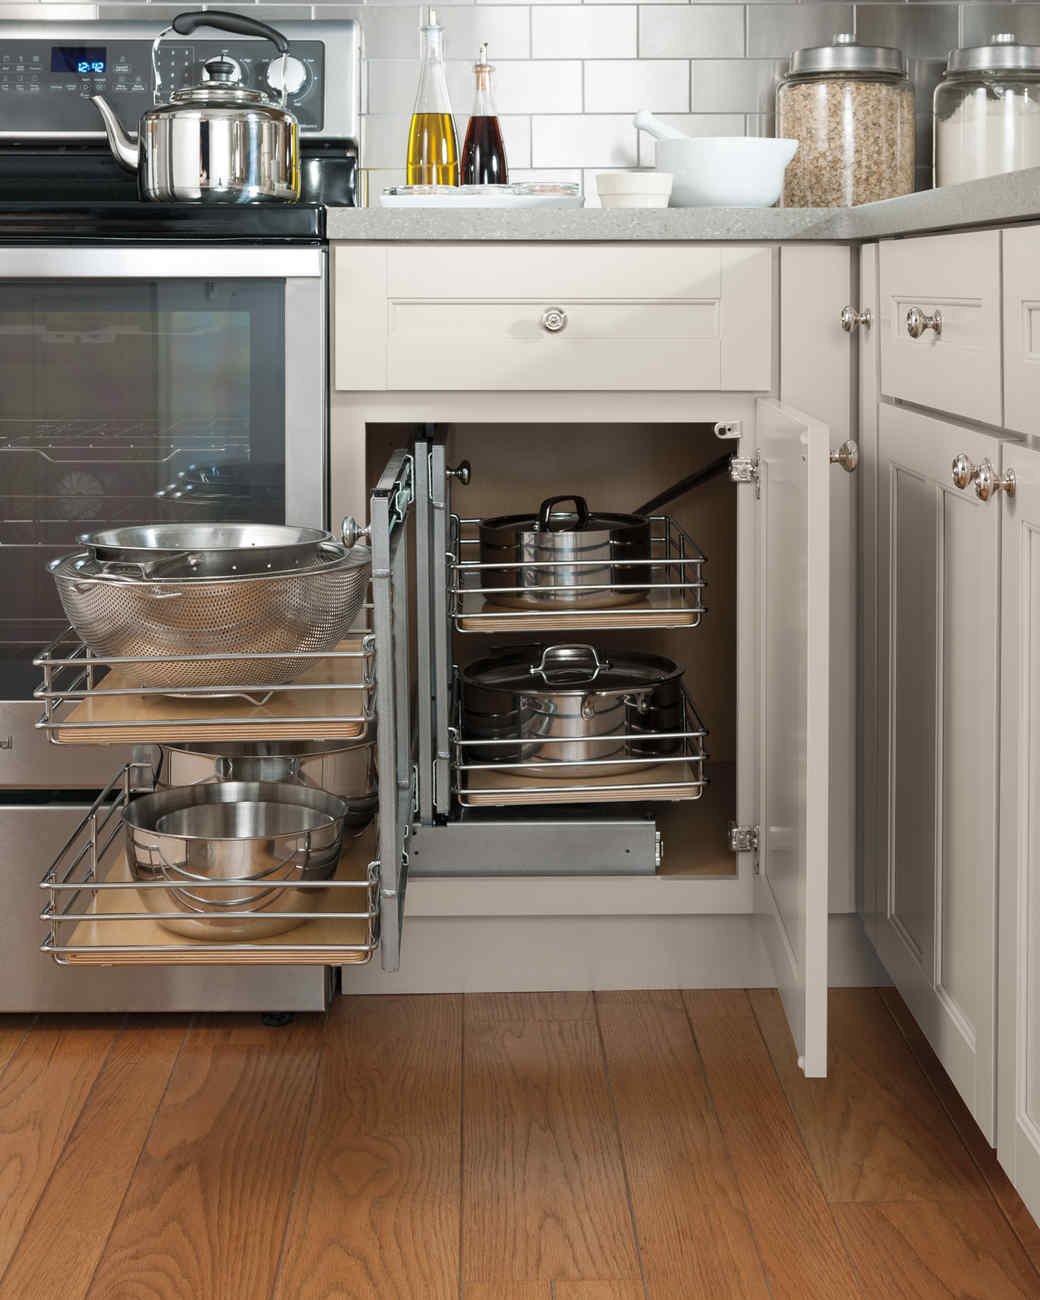 Organizing your kitchen hardware